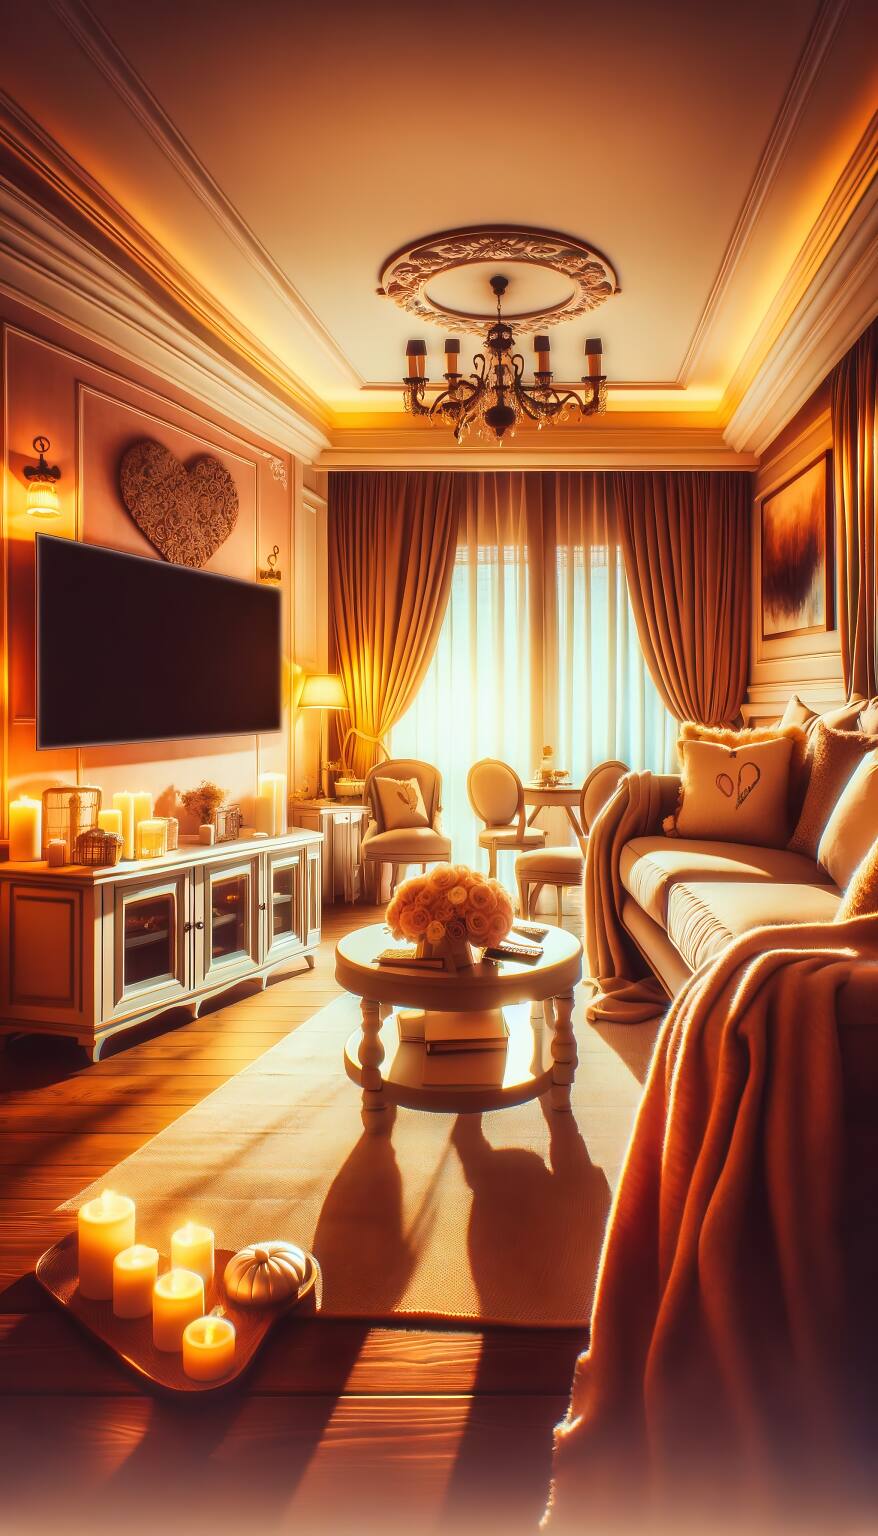 Ein Romantisches Wohnzimmer In Warmen, Einladenden Farben Mit Einem Bequemen Sofa Und Einem Flachbildfernseher Schafft Eine Entspannte Und Gemütliche Atmosphäre.